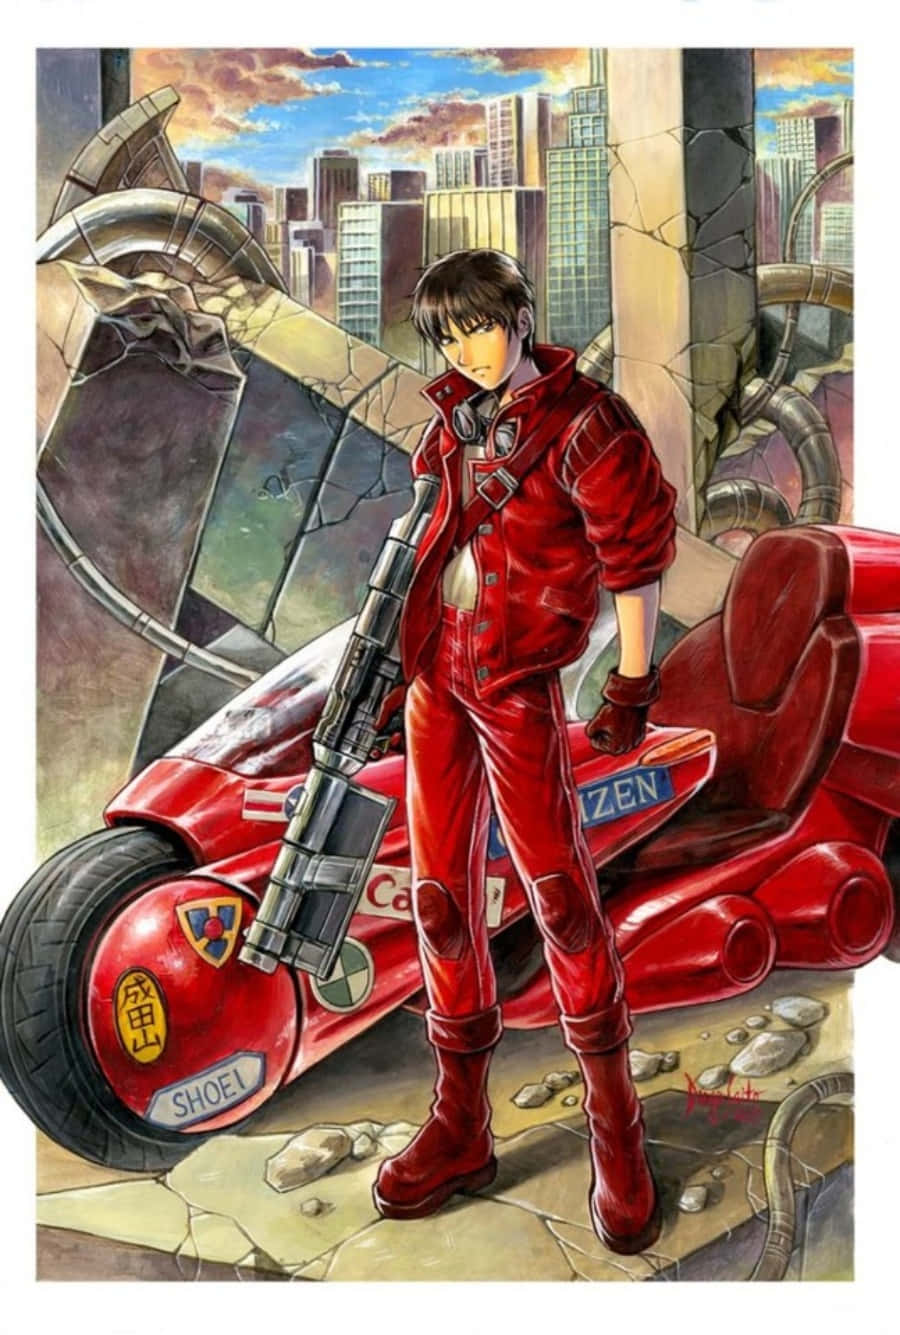 Shotaro Kaneda Riding His Motorcycle In Neo Tokyo Wallpaper